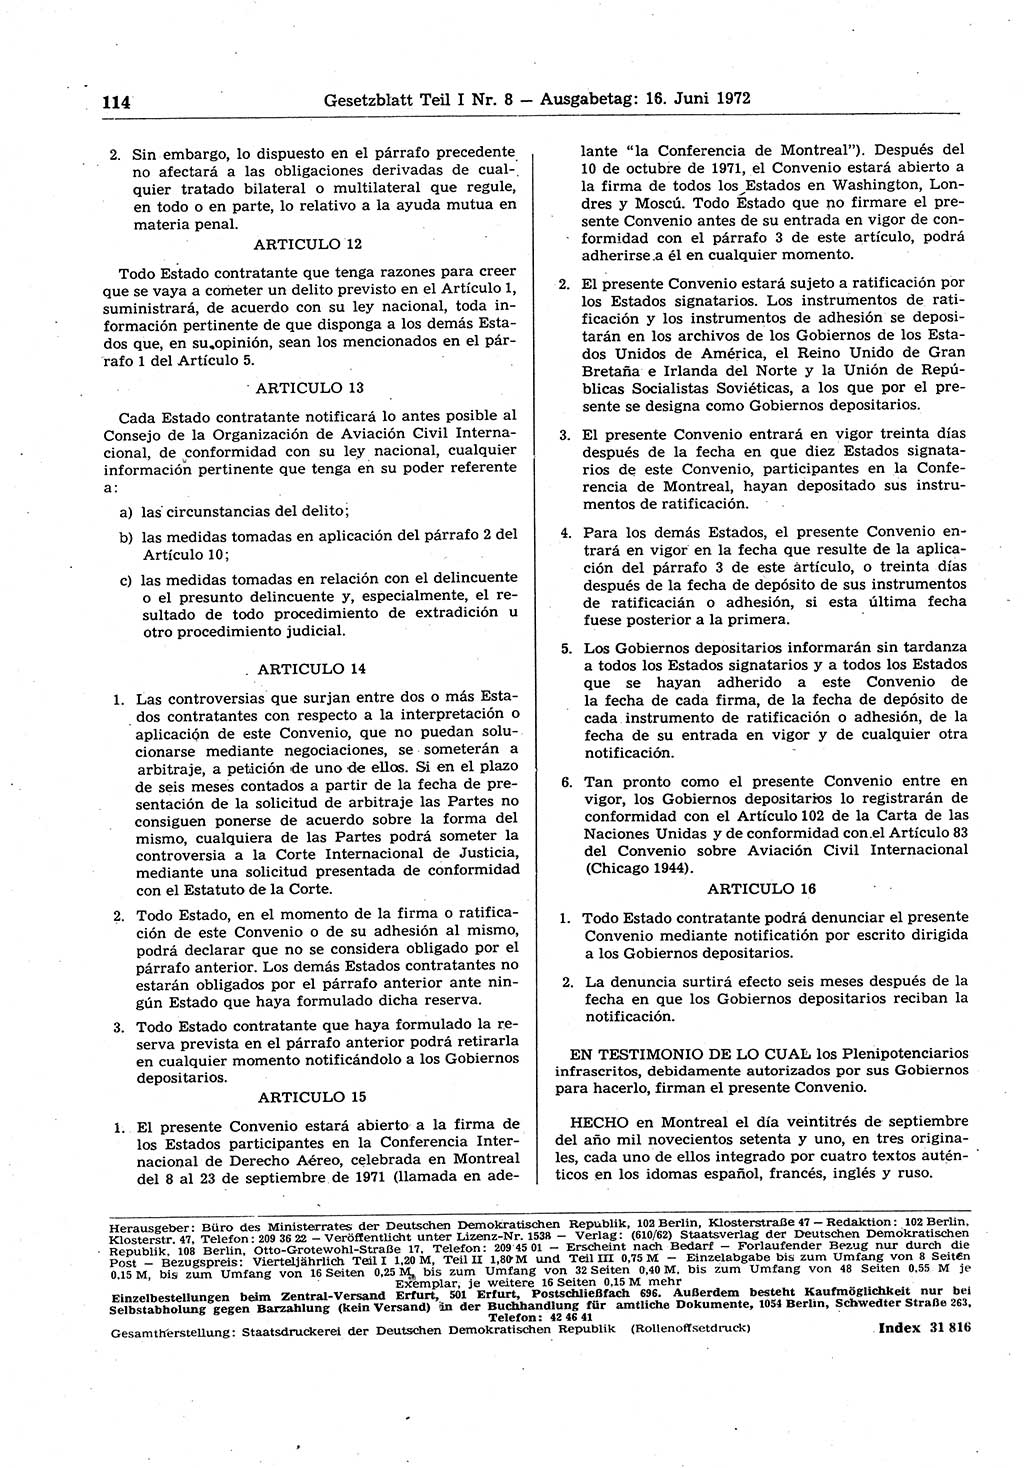 Gesetzblatt (GBl.) der Deutschen Demokratischen Republik (DDR) Teil Ⅰ 1972, Seite 114 (GBl. DDR Ⅰ 1972, S. 114)